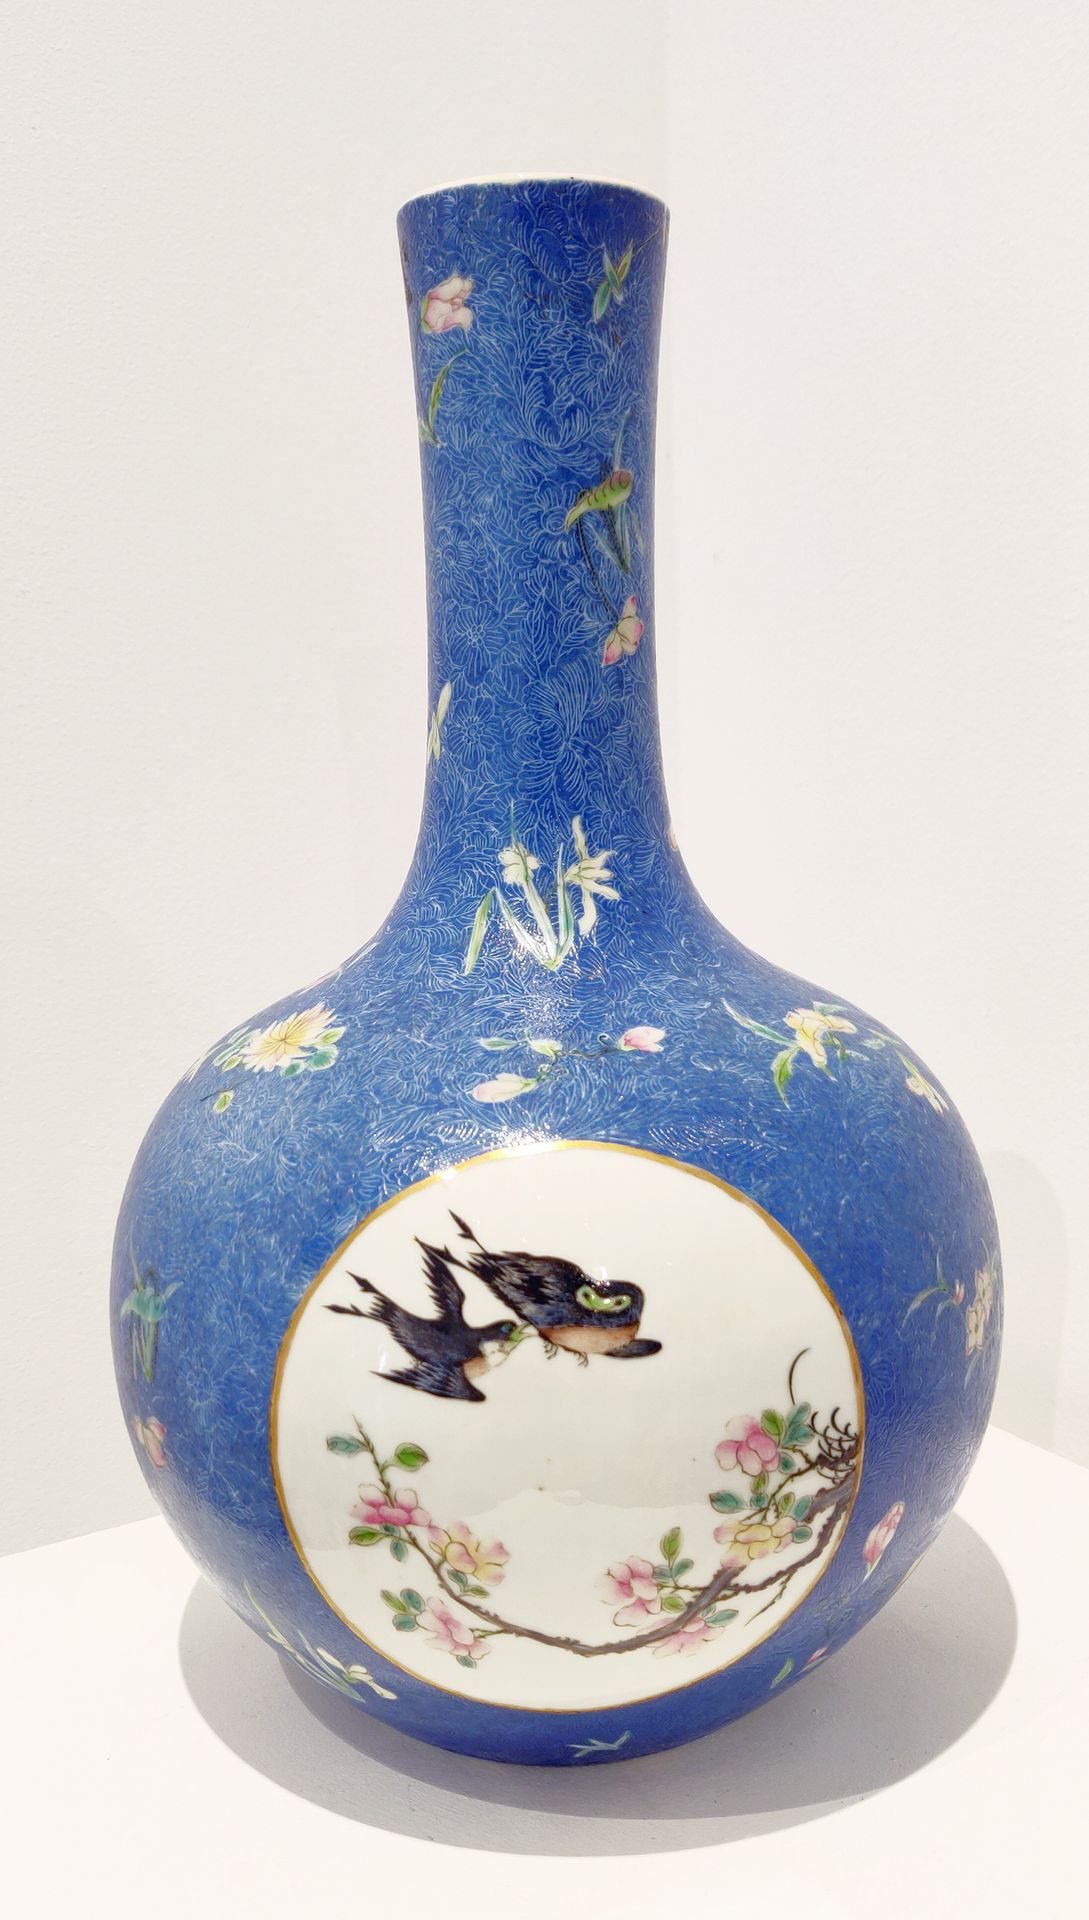 Null 
CHINA, siglo XIX

Raro jarrón tianqiuping decorado con aves en reserva sob&hellip;